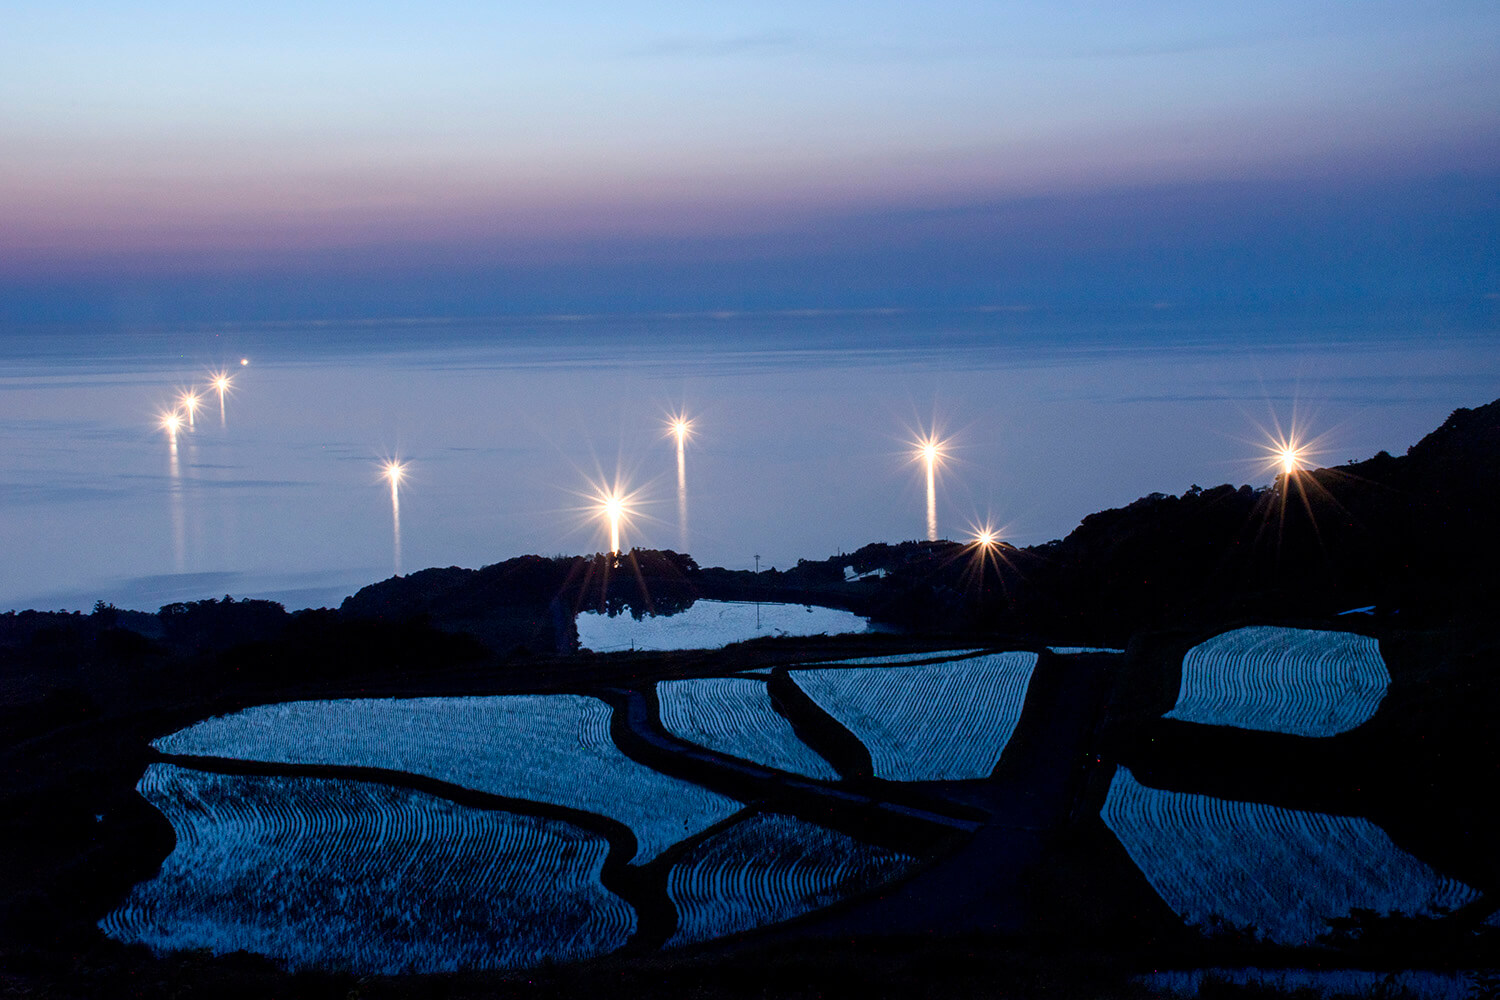 わずかな残照を映し青く浮かび上がる棚田と日本海にゆらめく漁り火を一緒に眺められる